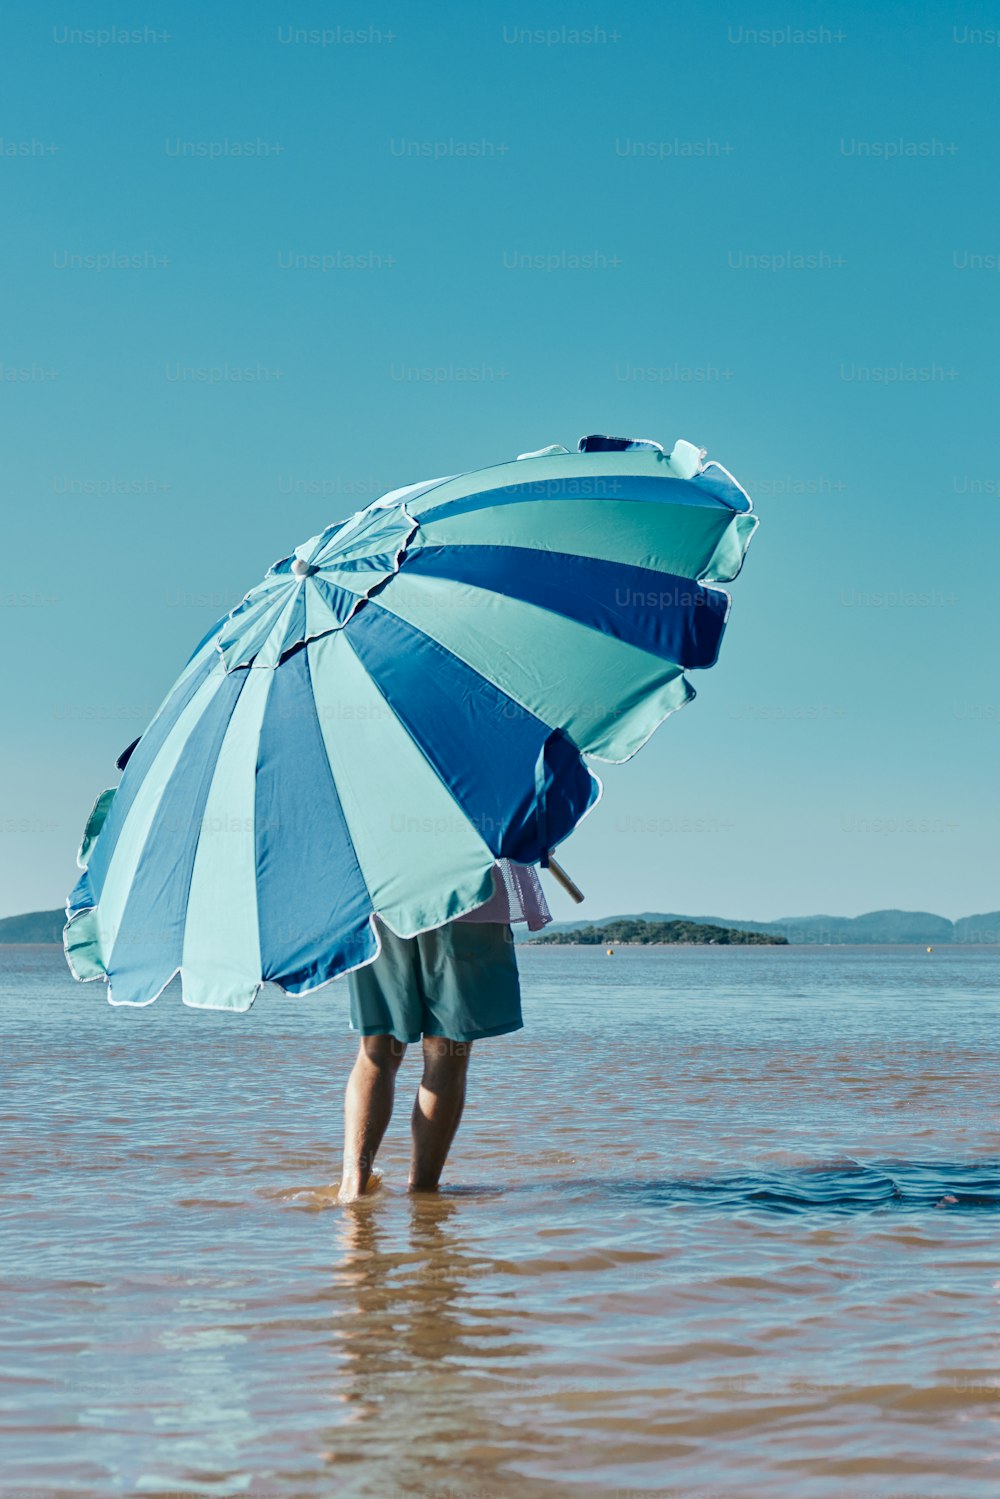 Una persona parada en el agua con un paraguas